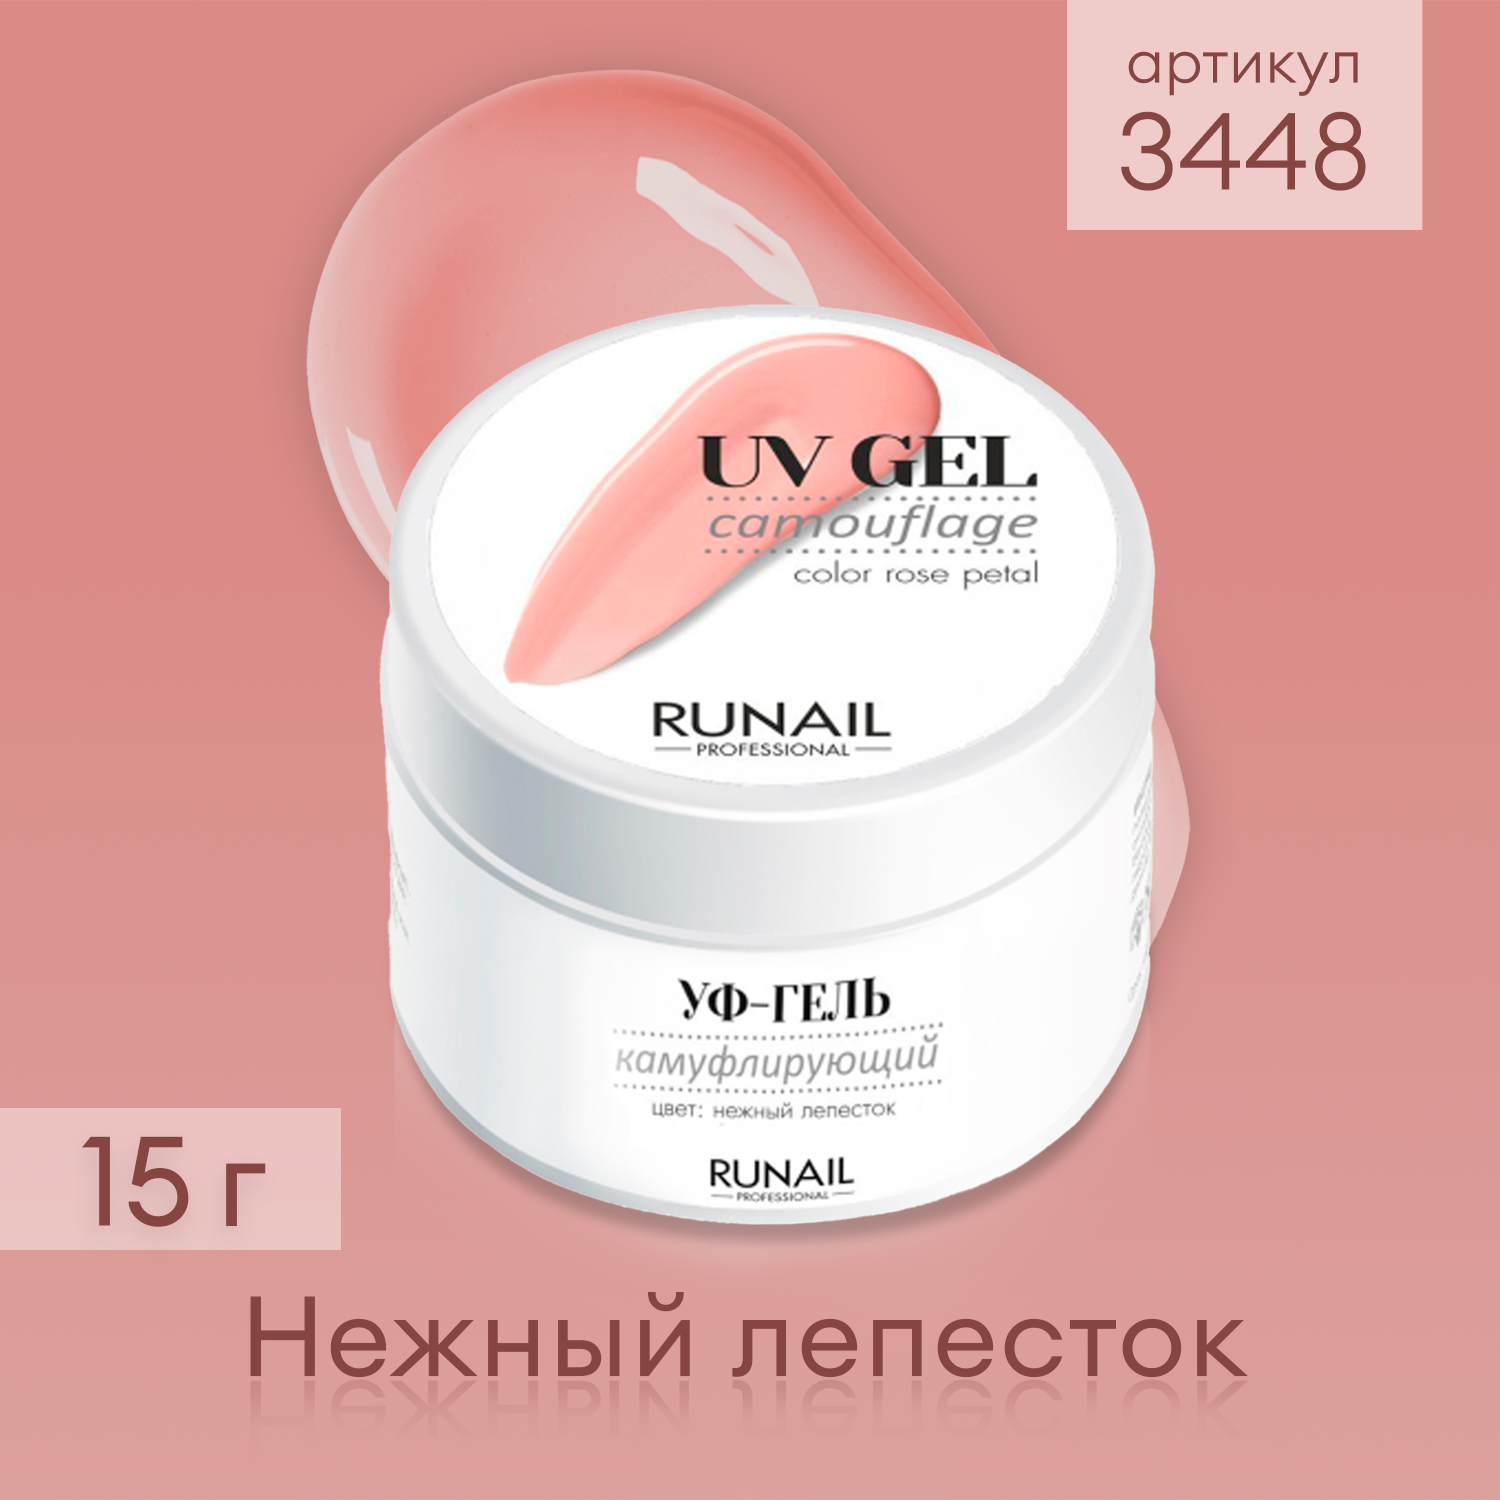 RuNail Professional / Камуфлирующий однофазный УФ-гель лак для наращивания ногтей цвет: Нежный лепесток, 15 г № 3448